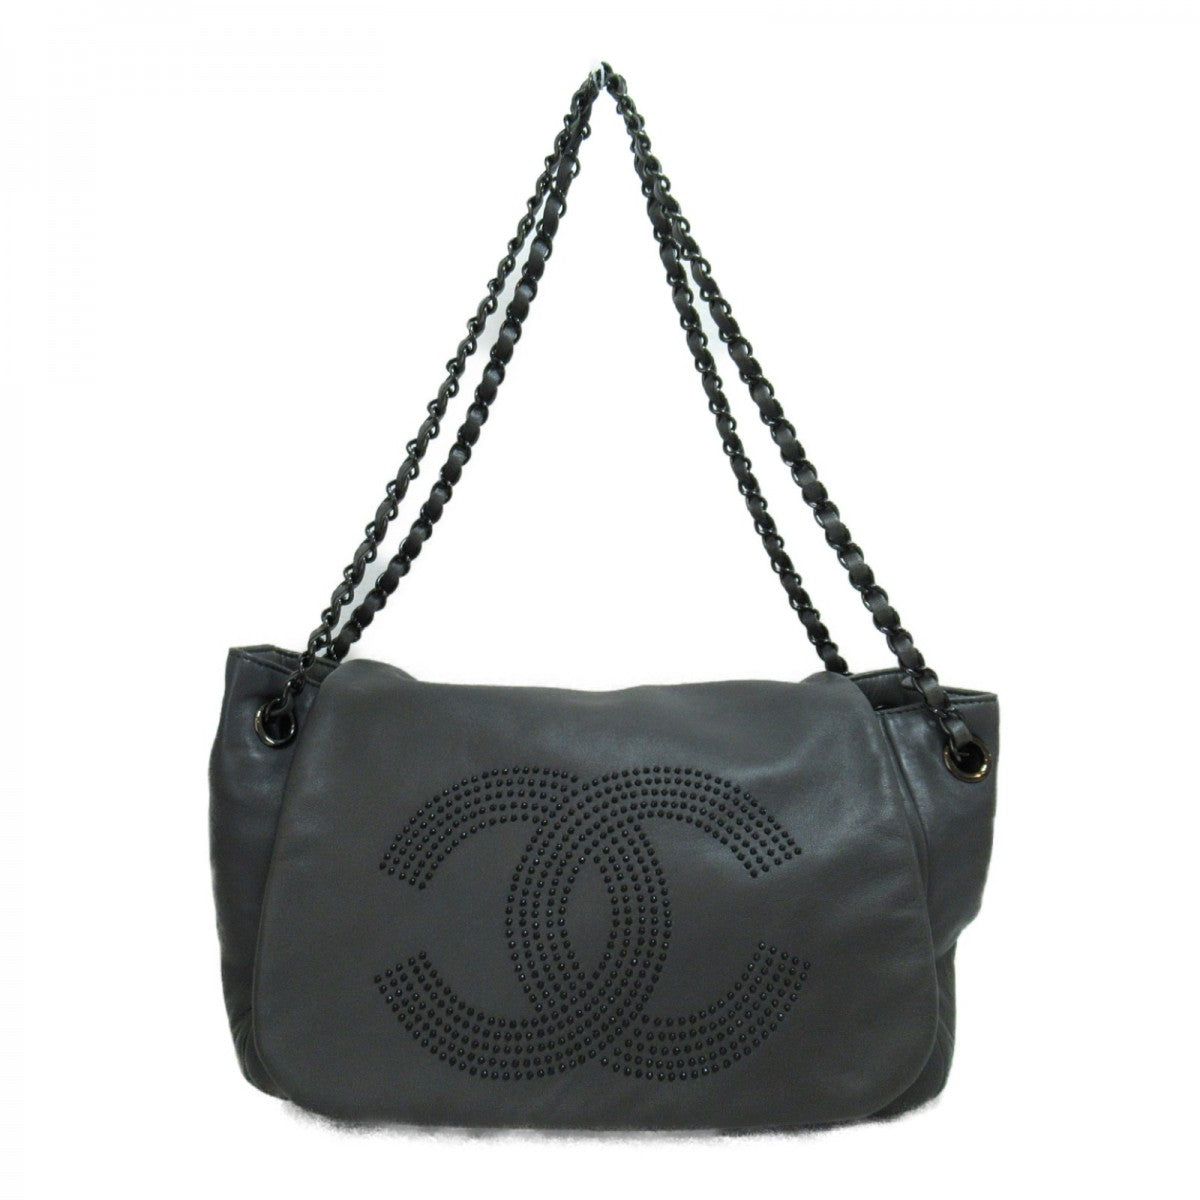 CC Leather Chain Flap Shoulder Bag